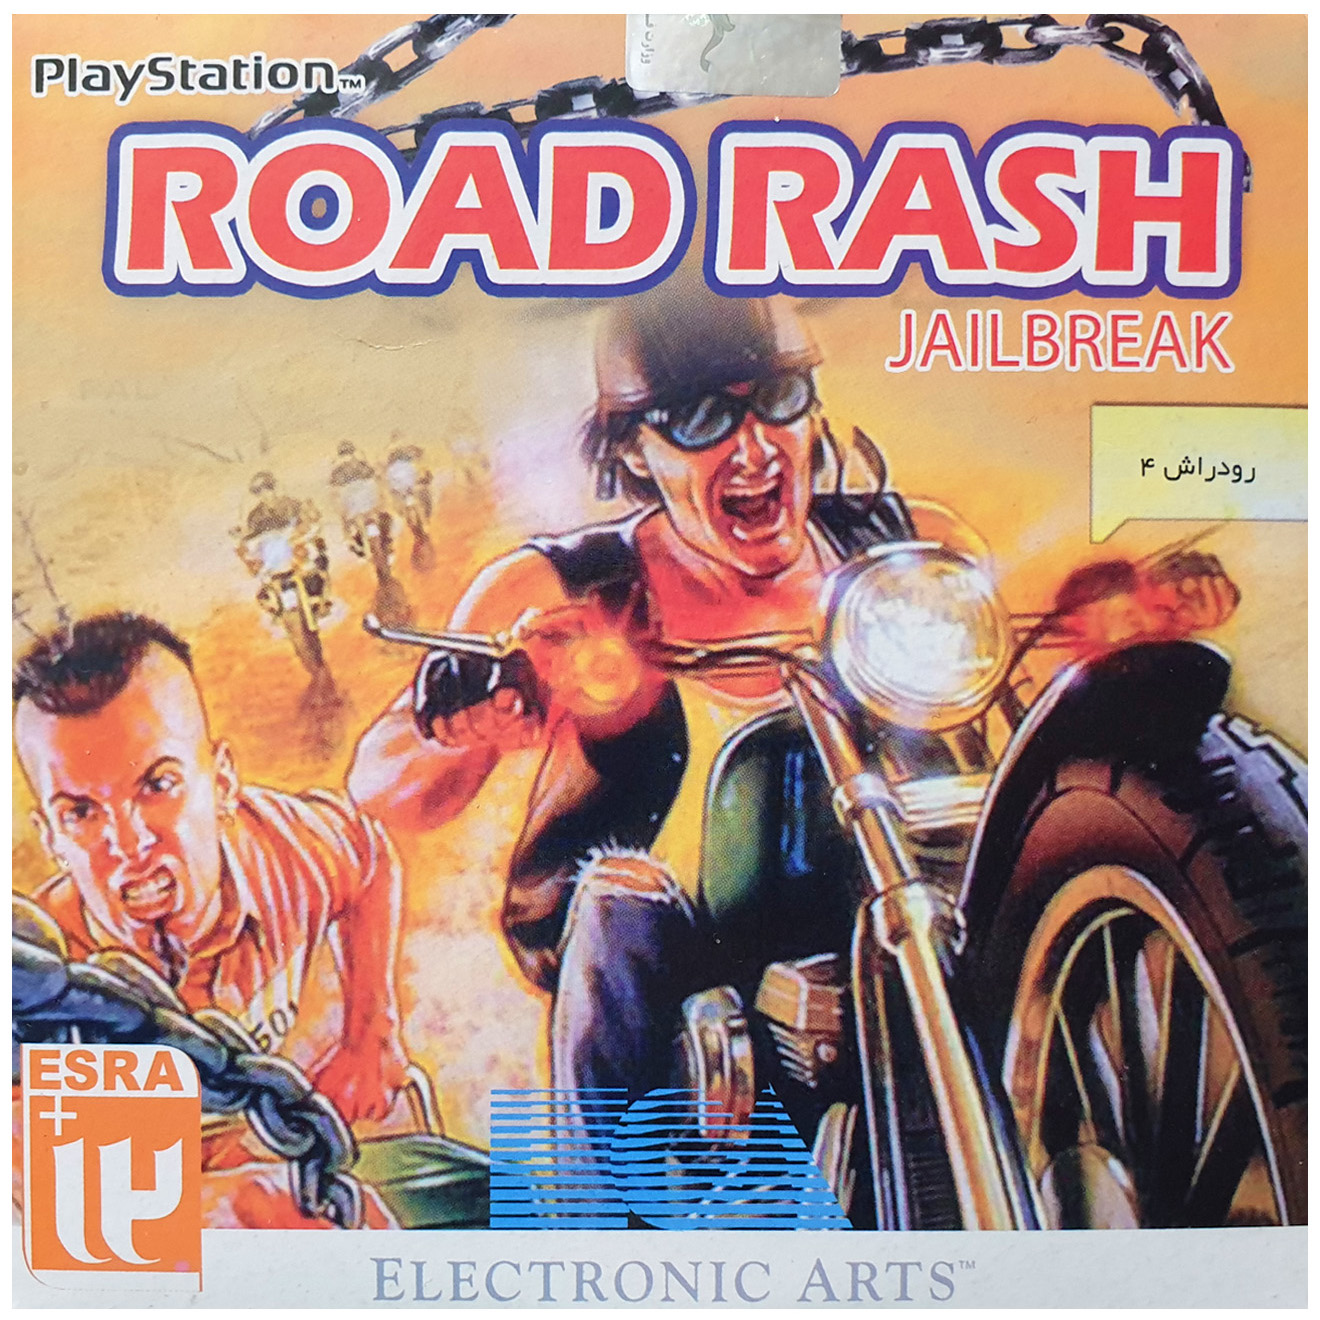 بازی Road Rash 4 jailbreak مخصوص PS1